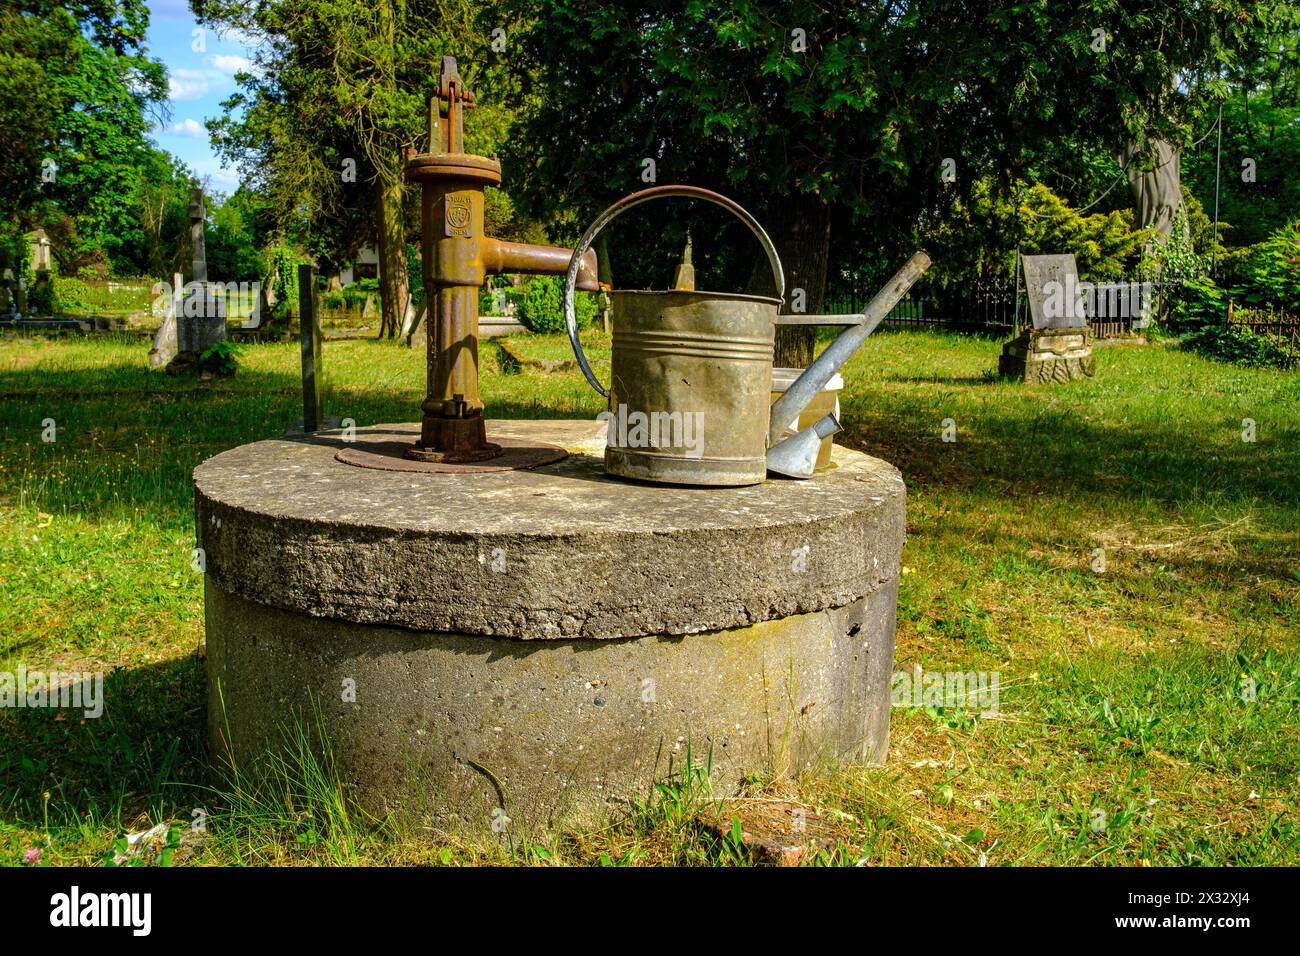 Friedhofromantik mit einer gebeulten Gießkanne auf einem handgepumpten Brunnen, protestantischer Friedhof von Pokoj, Bezirk Namyslow, Woiwodschaft Oppeln, Polen. Stockfoto